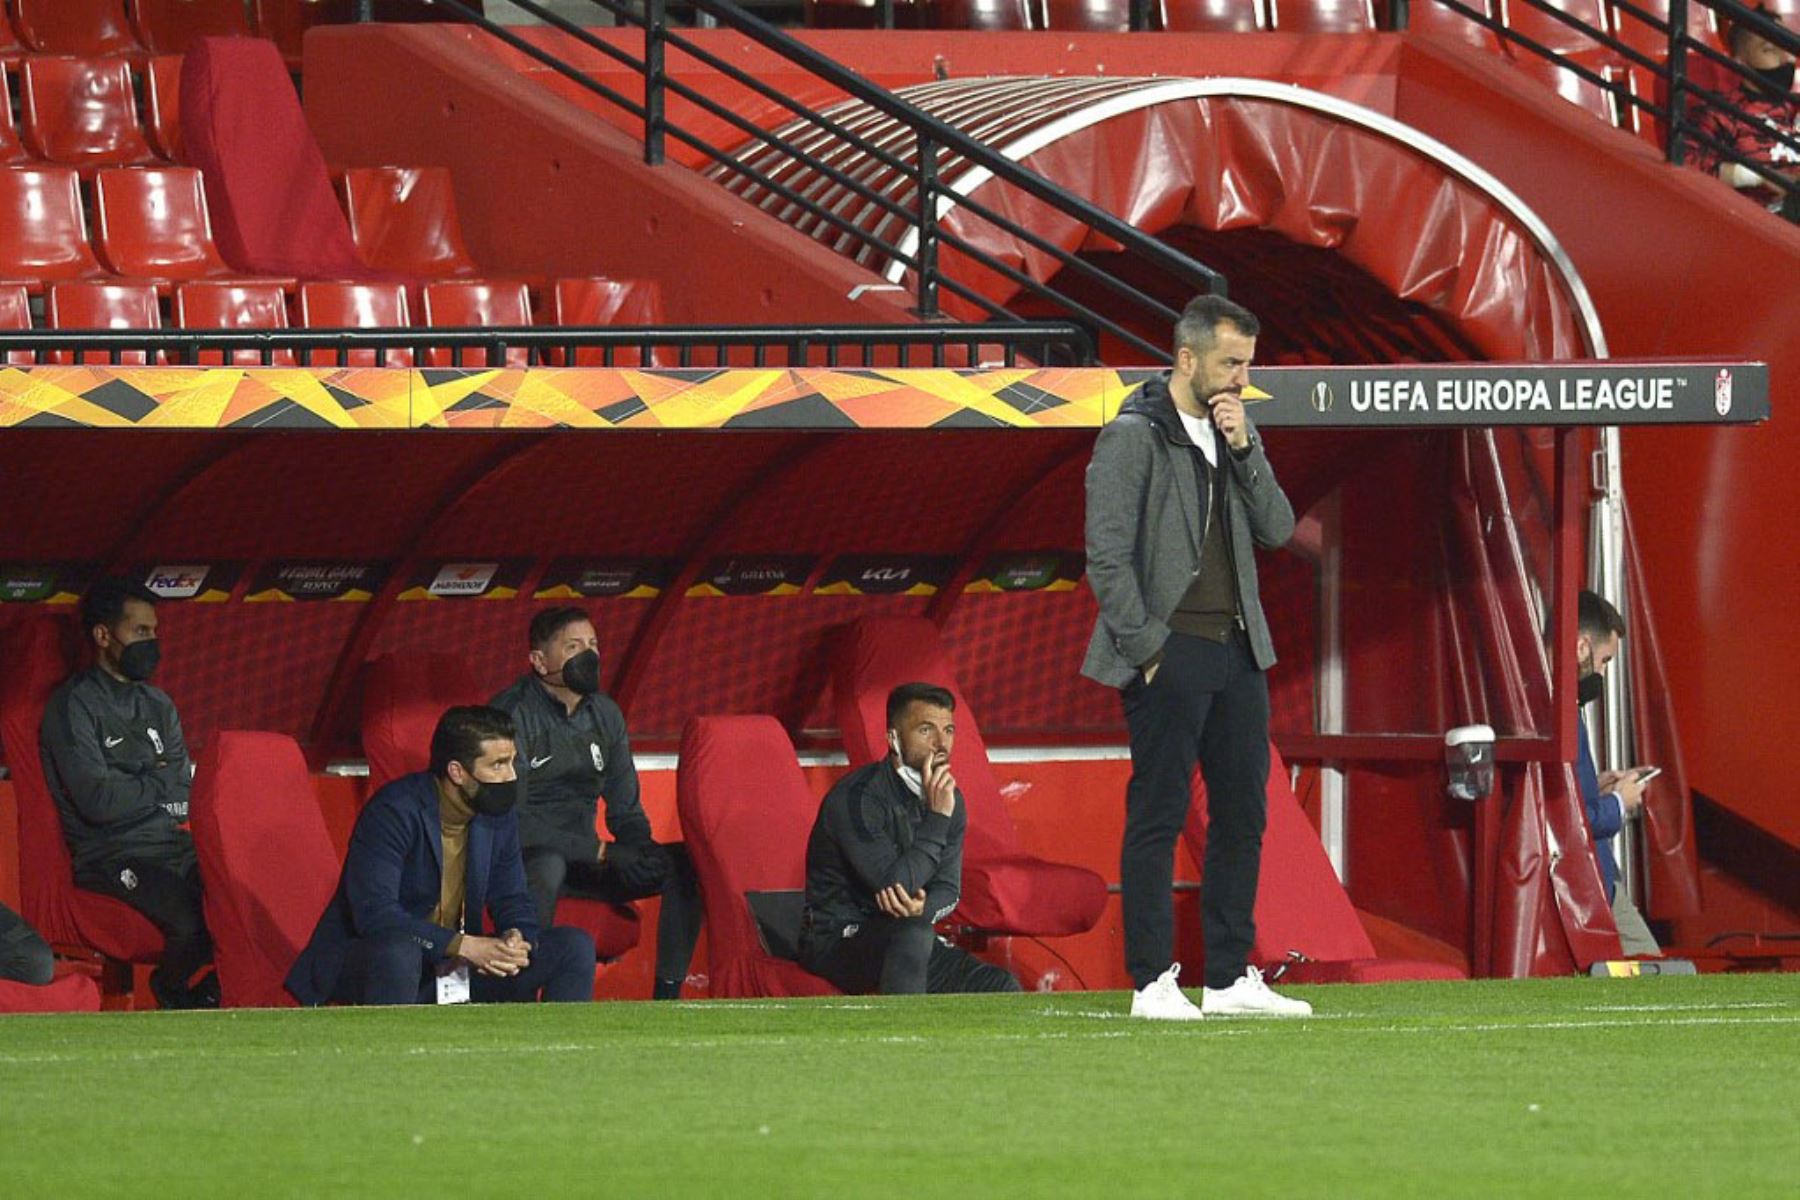 El entrenador español del Granada, Diego Martínez Peñas, reacciona durante el partido de fútbol de la UEFA Europa League entre el Granada FC y el Manchester United en el estadio Nuevo Los Cármenes de Granada.

Foto:AFP